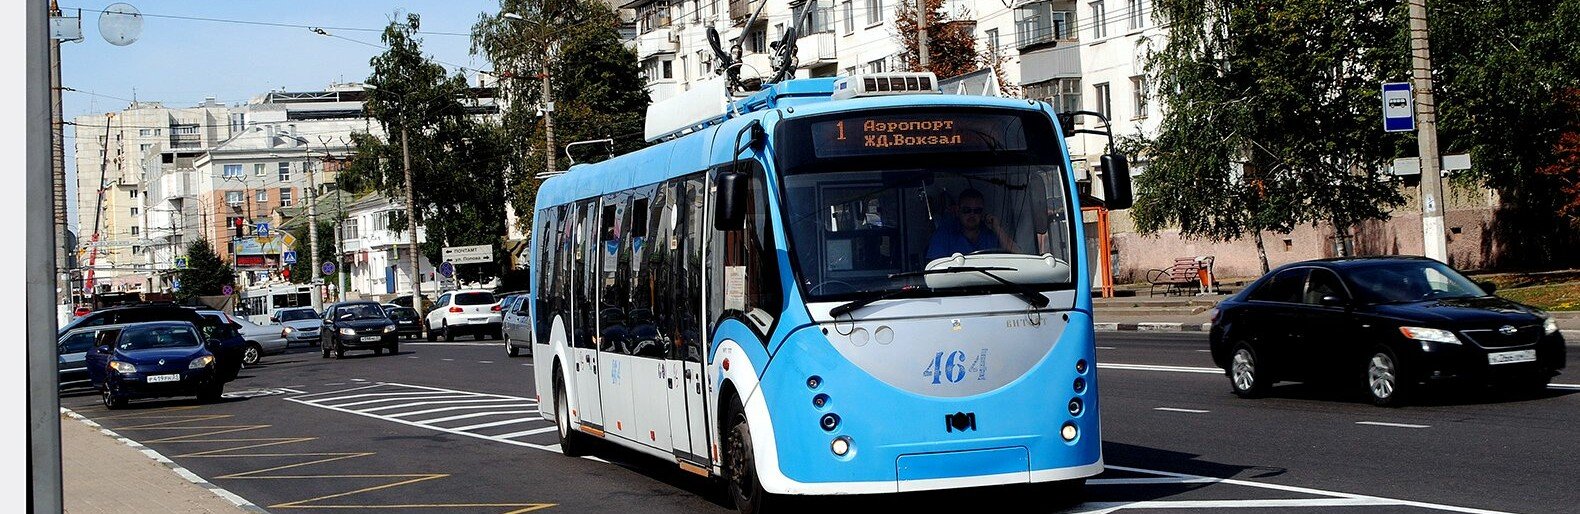 Троллейбусную подстанцию в Белгороде за 8 млн рублей выкупила строительная компания